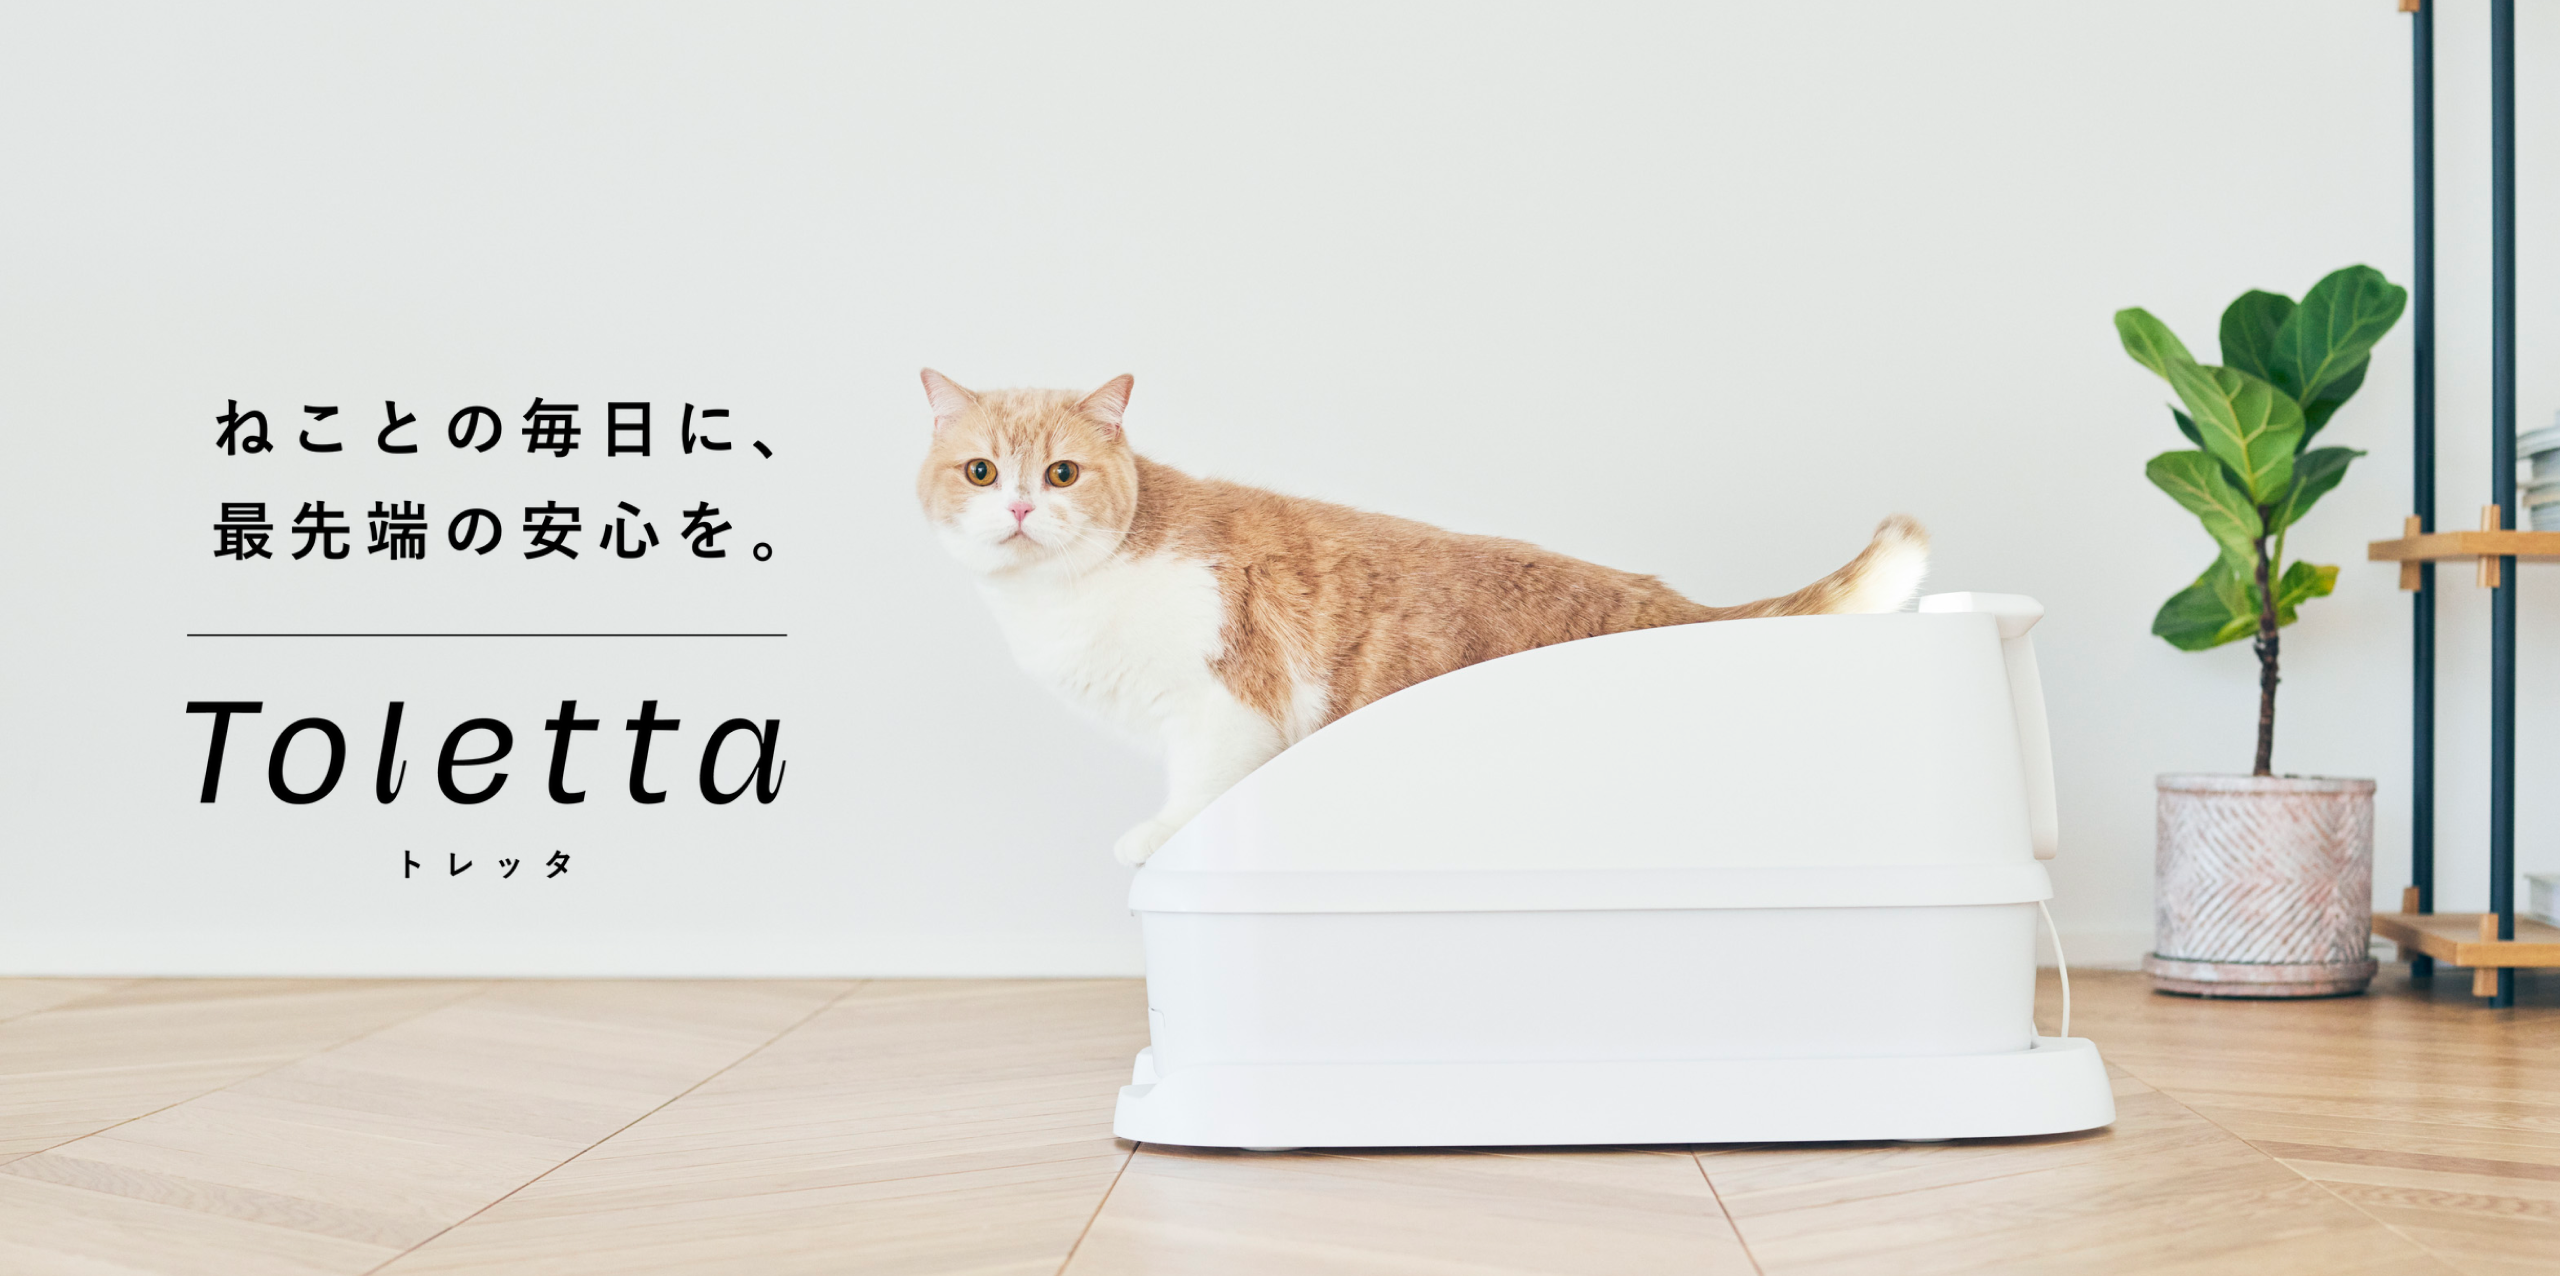 トレッタ[Toletta] - カメラつきねこトイレ | Toletta Cats [トレッタ ...